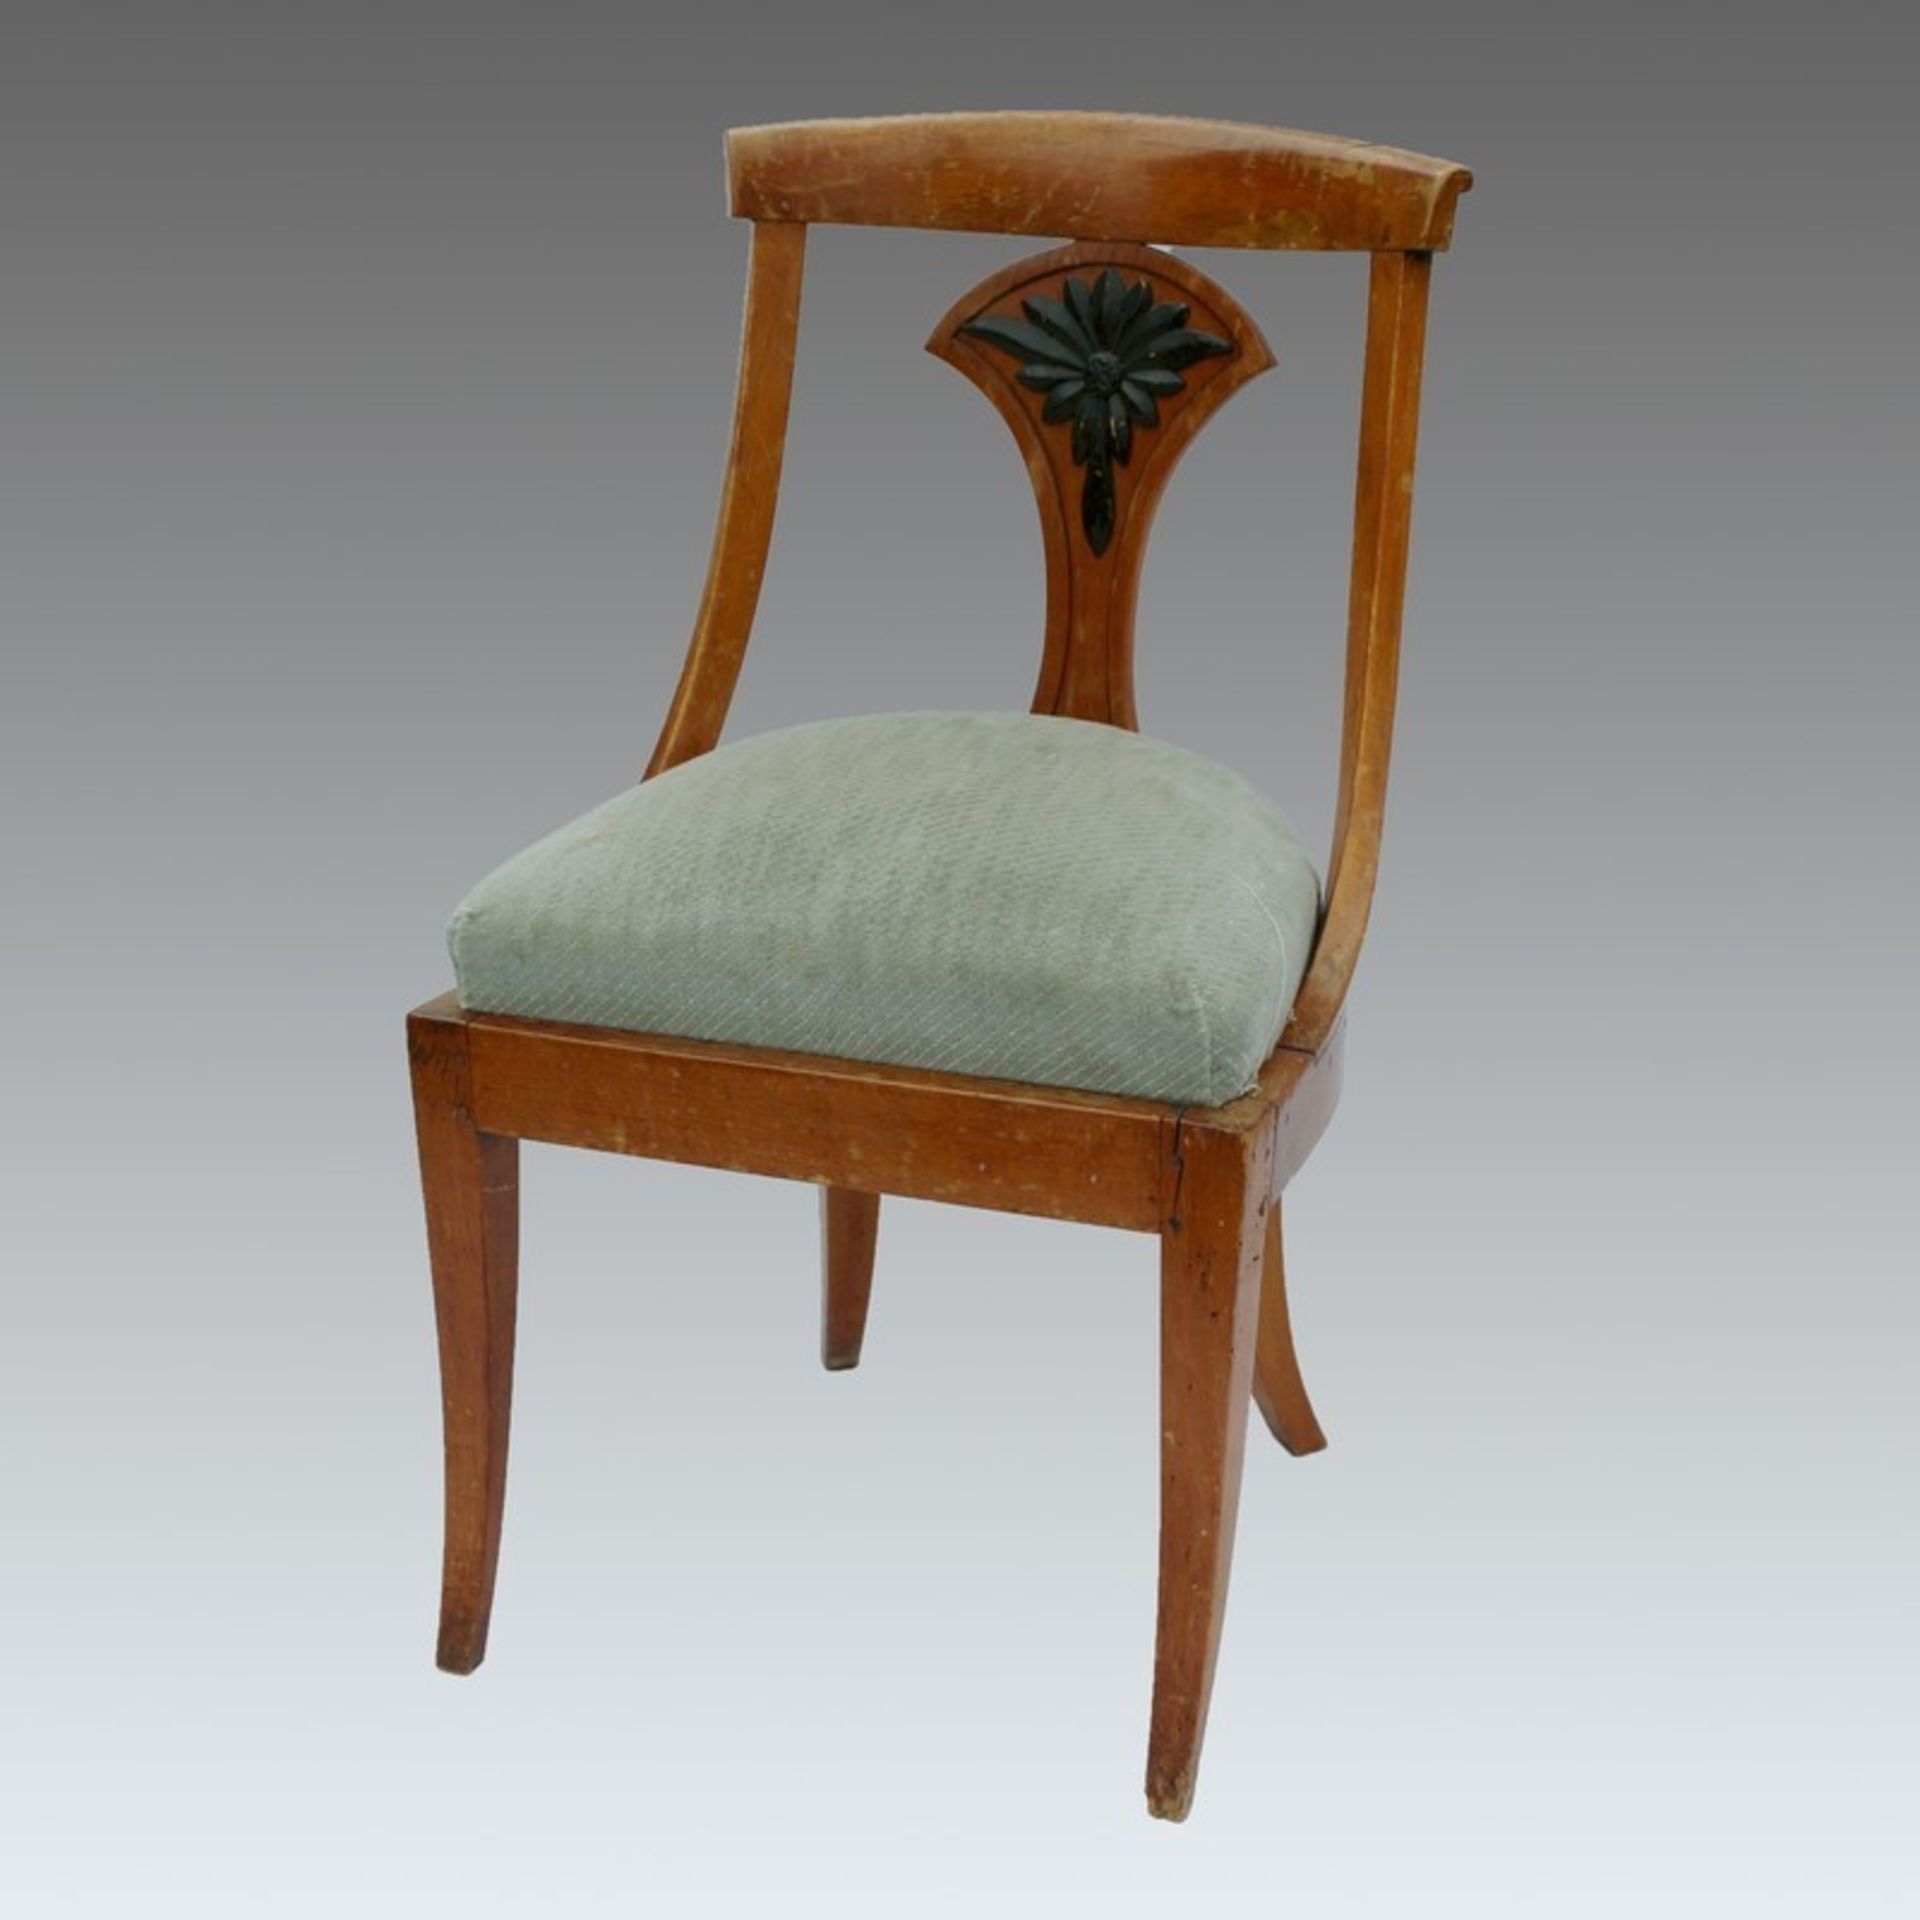 Biedermeier - Stuhl um 1820, süddeutsch, Kirschbaum, gebogte Vierkantbeine, halbkreisförmige